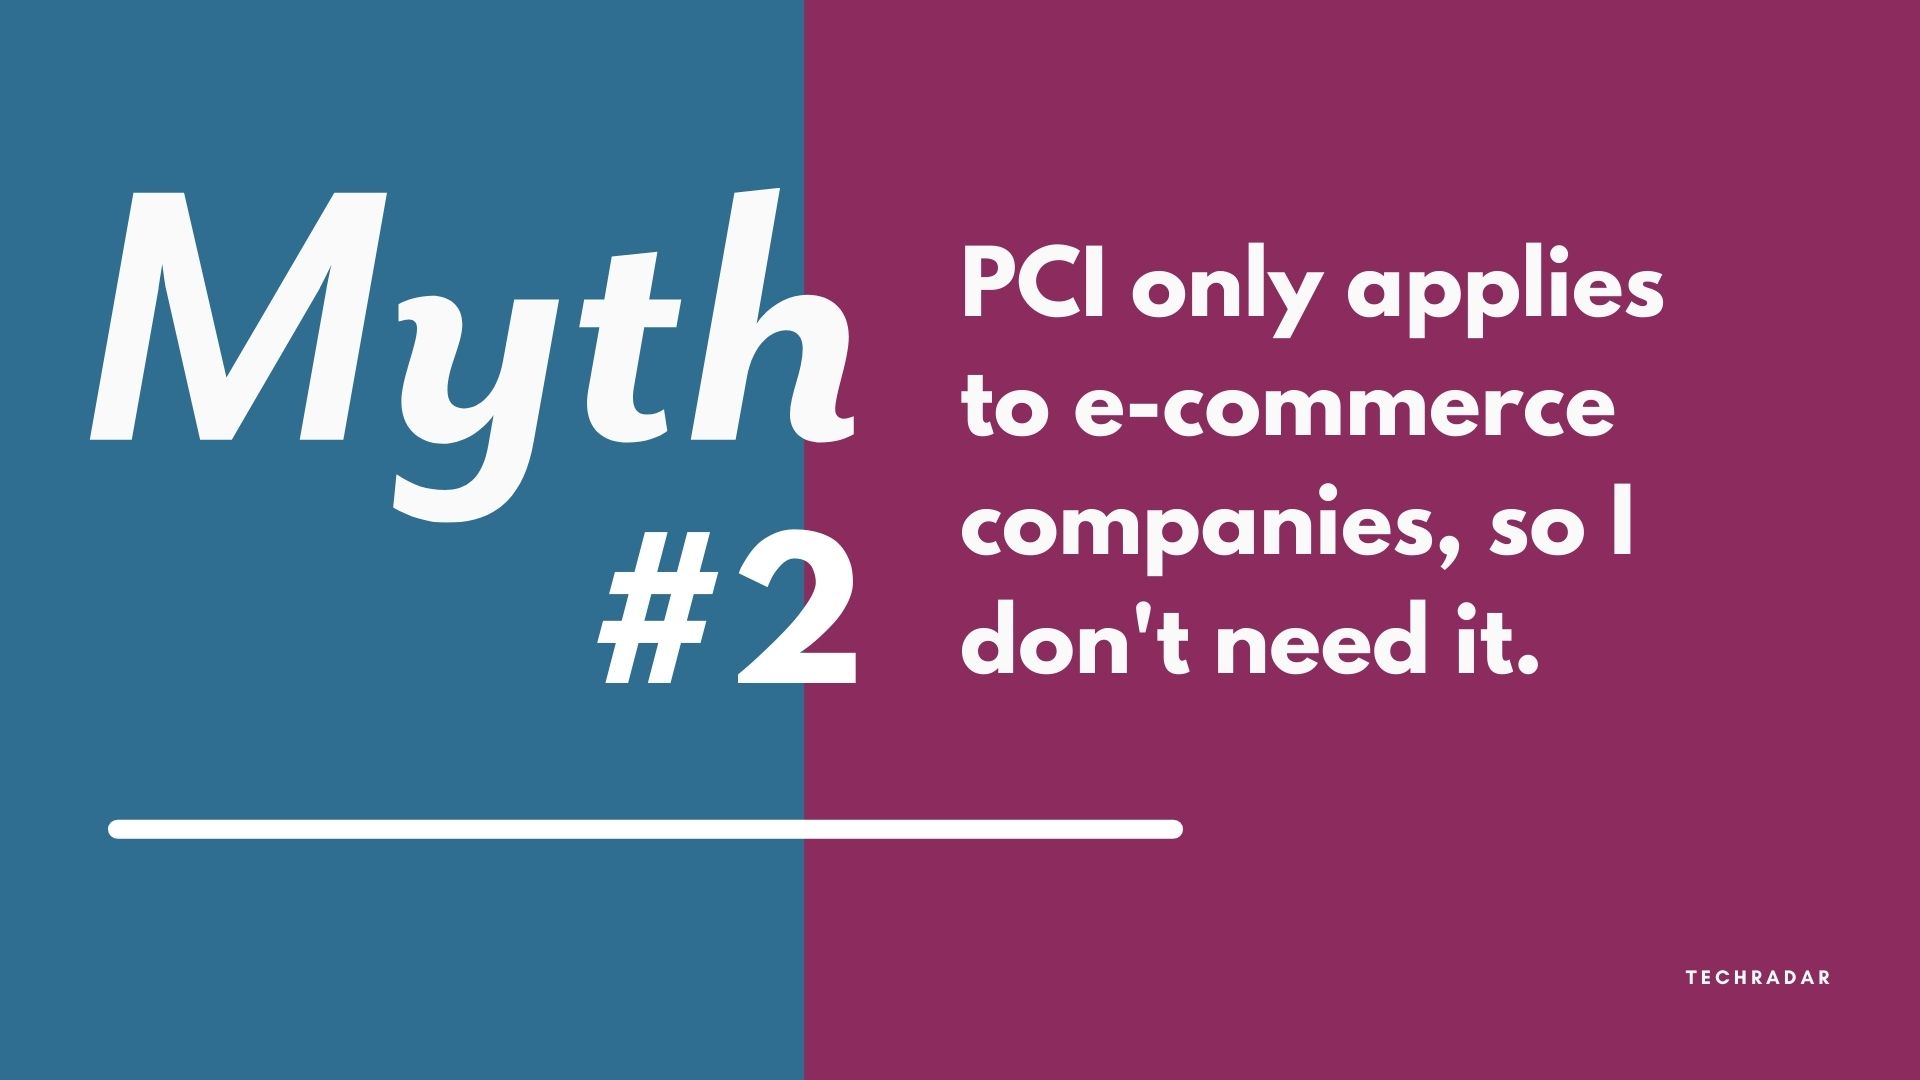 PCI myth